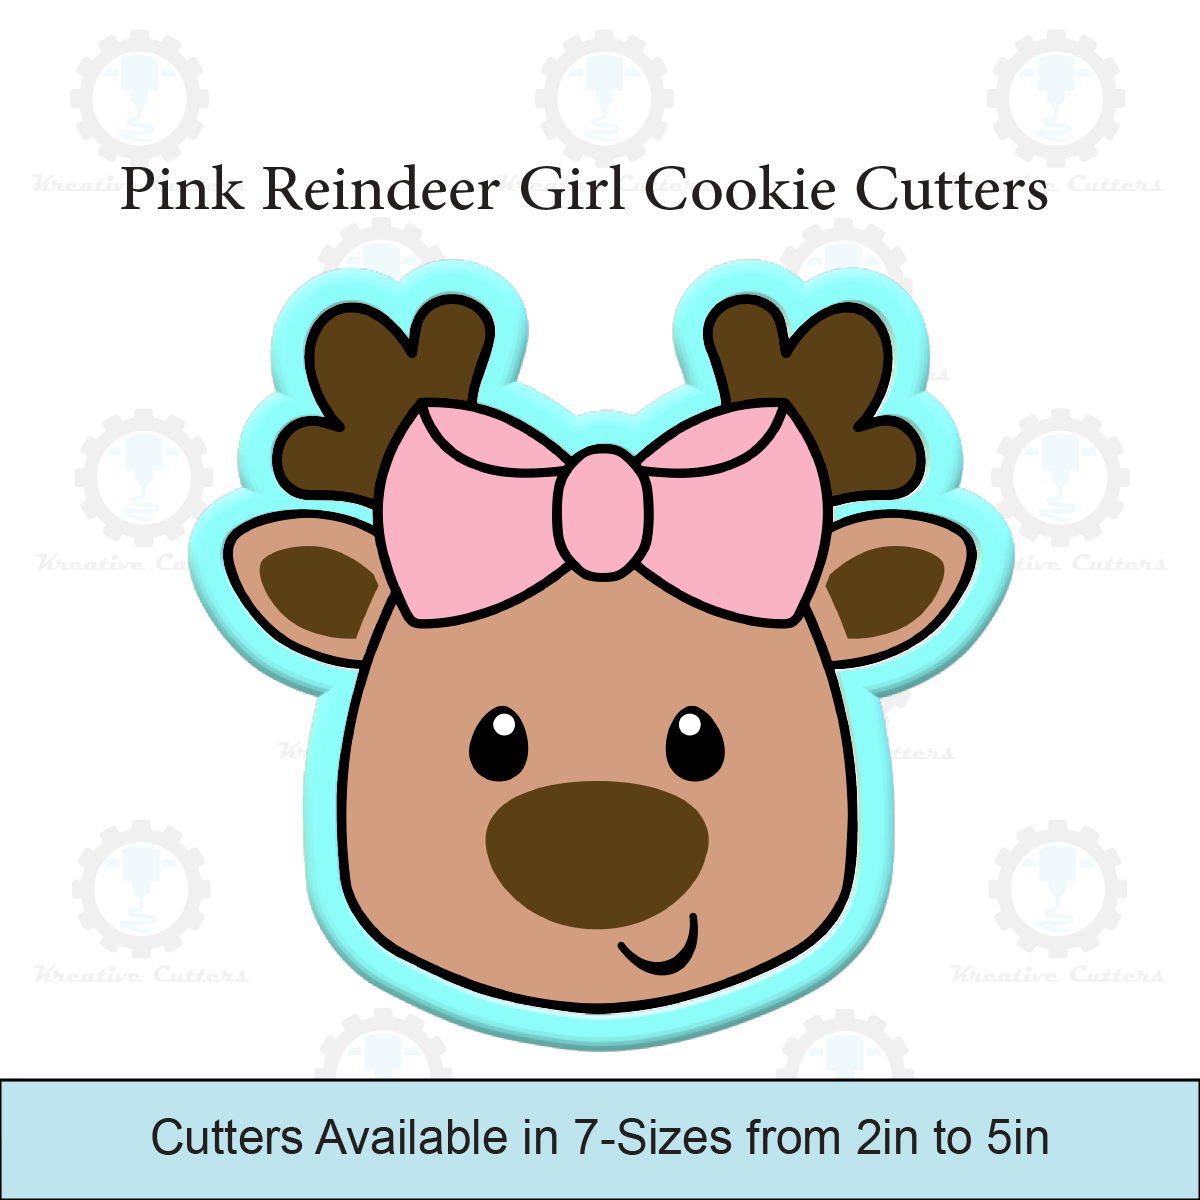 Pink Reindeer Girl Cookie Cutters